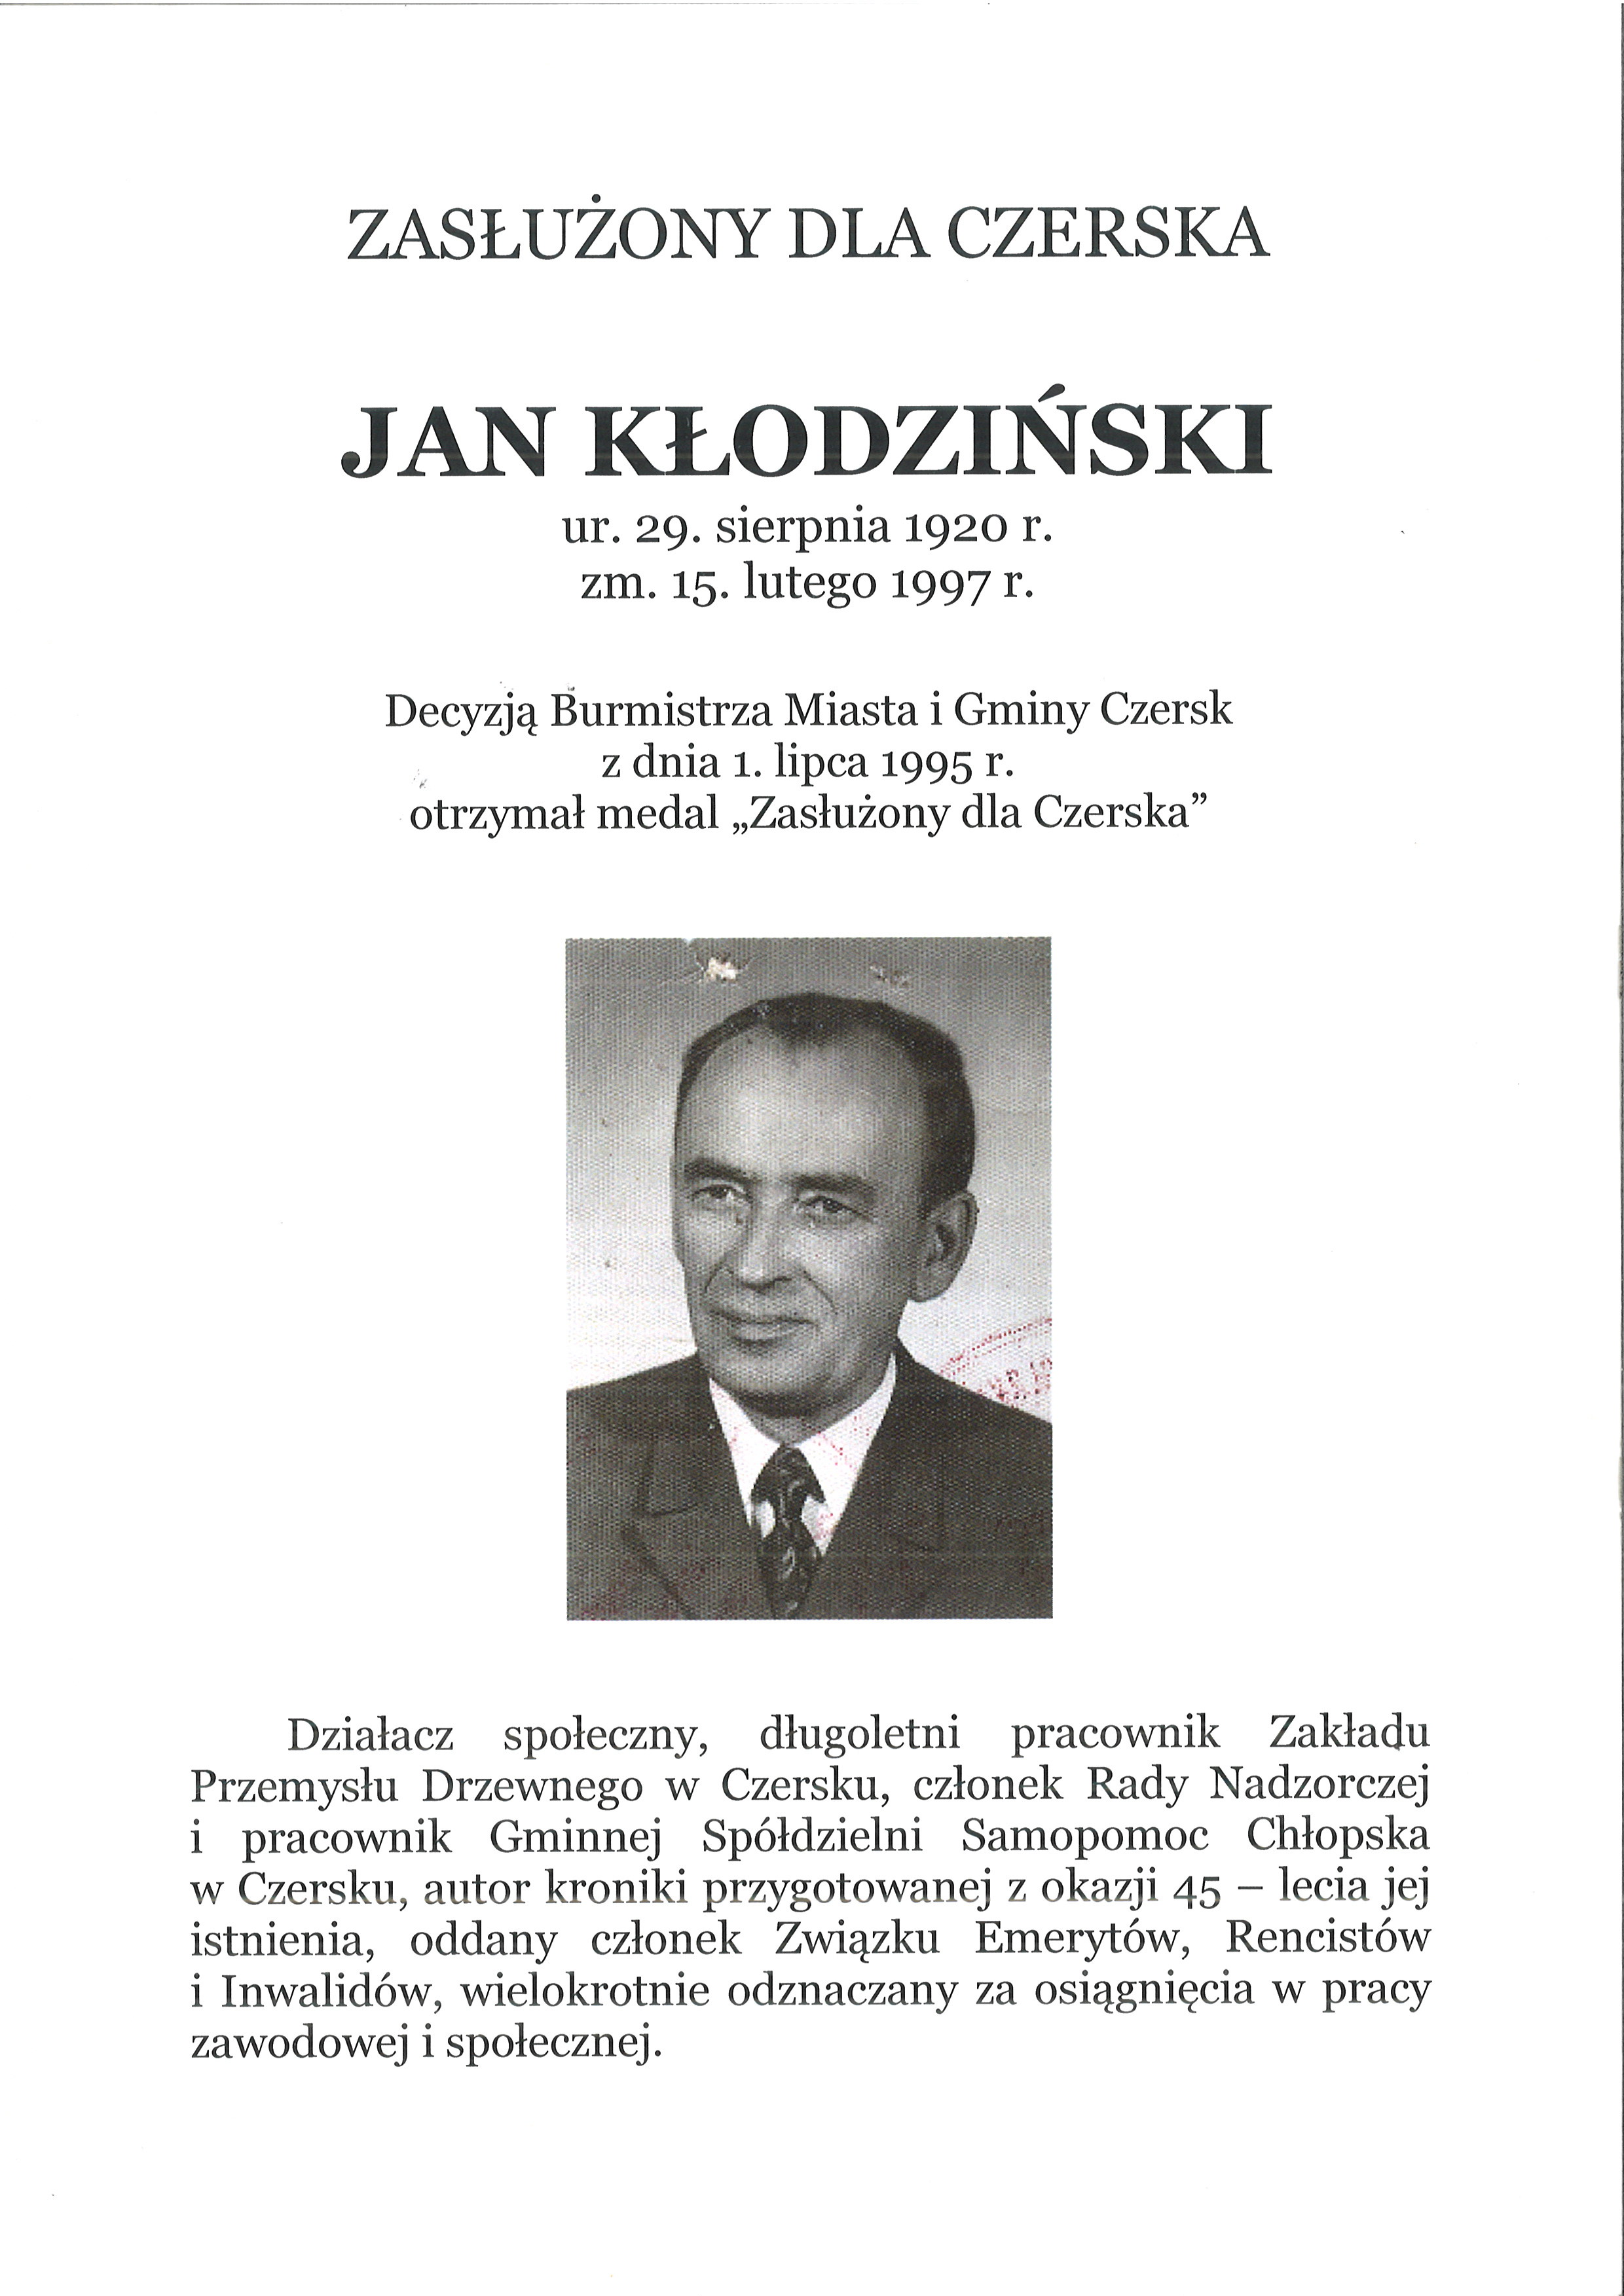 Jan Kłodziński